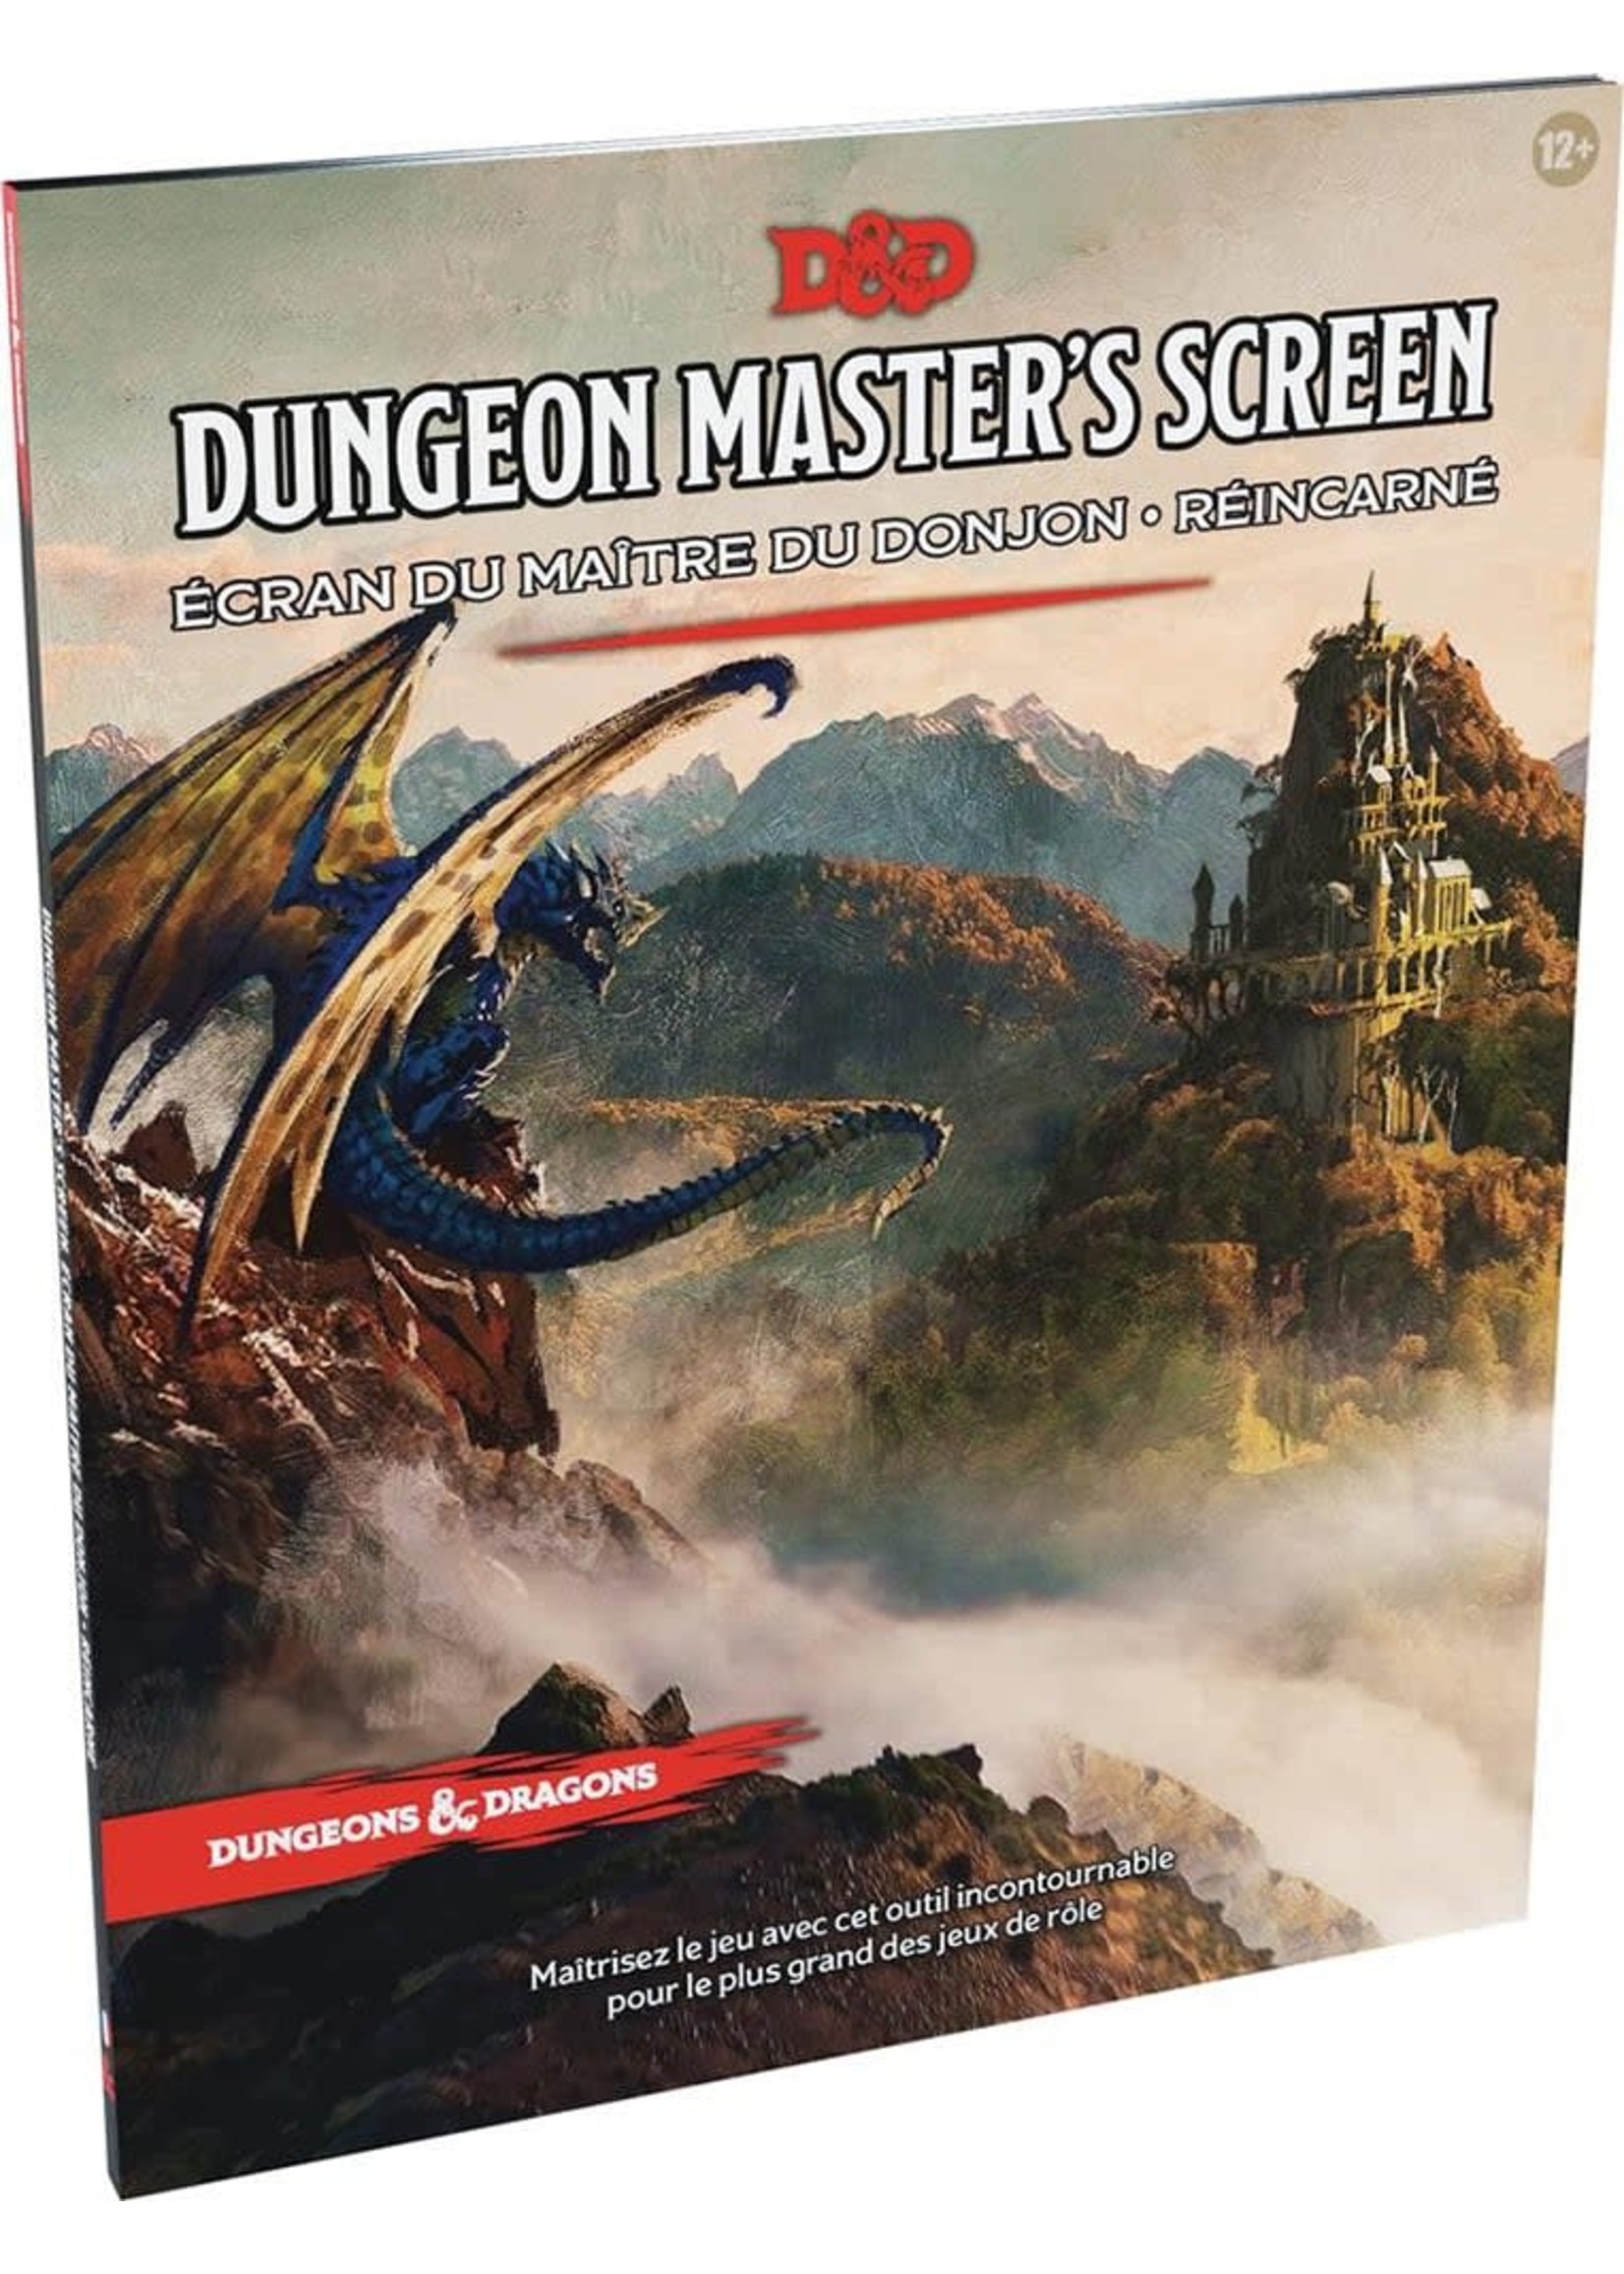 Dungeons & Dragons D&D - Dungeon master's screen - Écran du maître du donjon - Réincarné